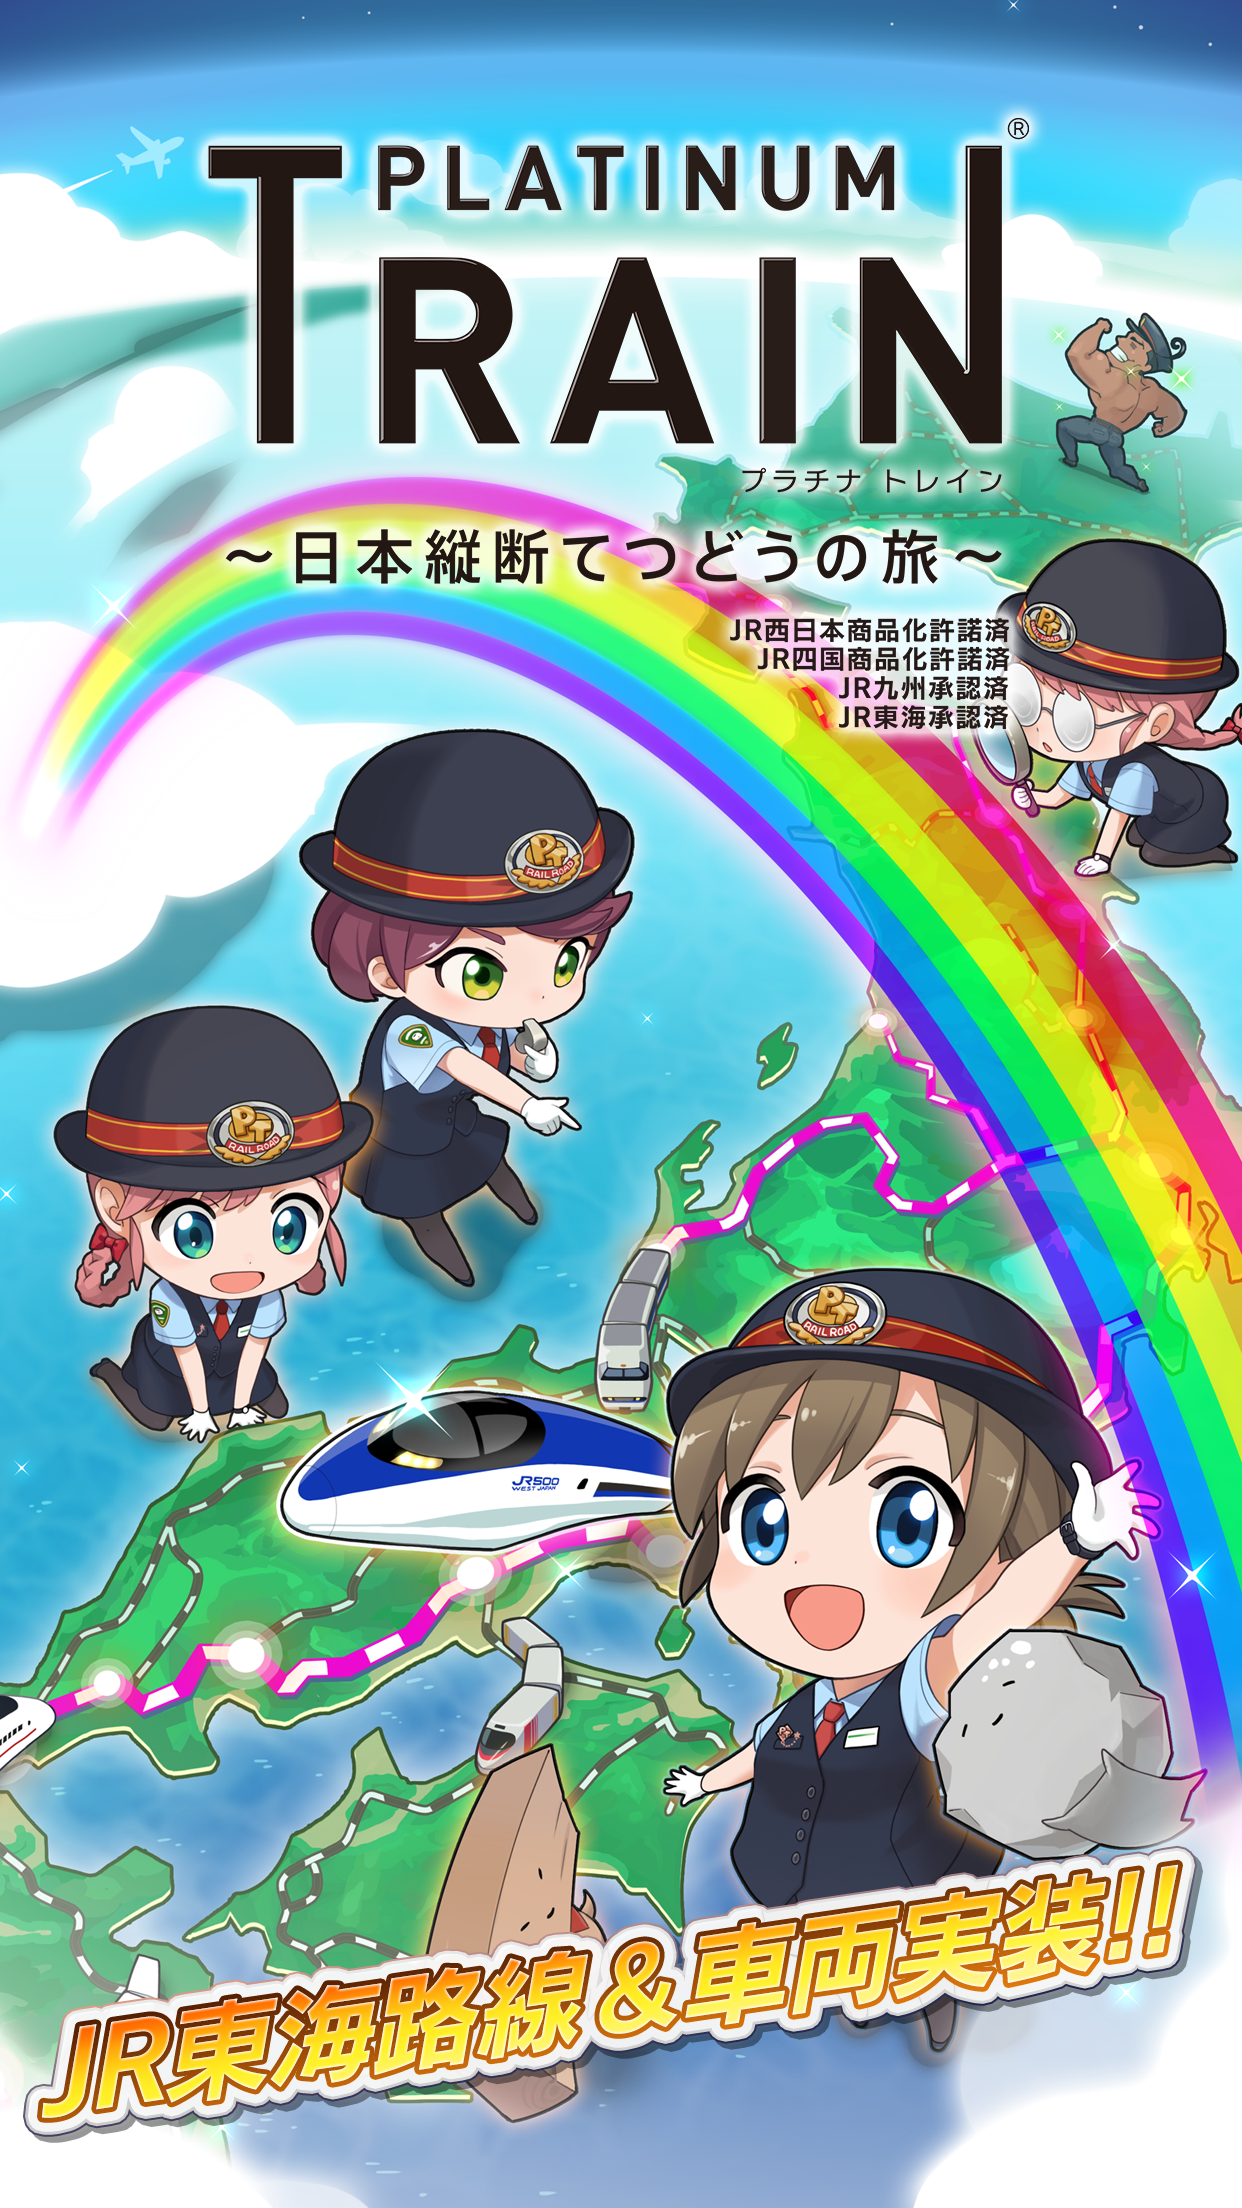 Screenshot 1 of जापान भर में प्लेटिनम ट्रेन ट्रेन यात्रा 7.2.3